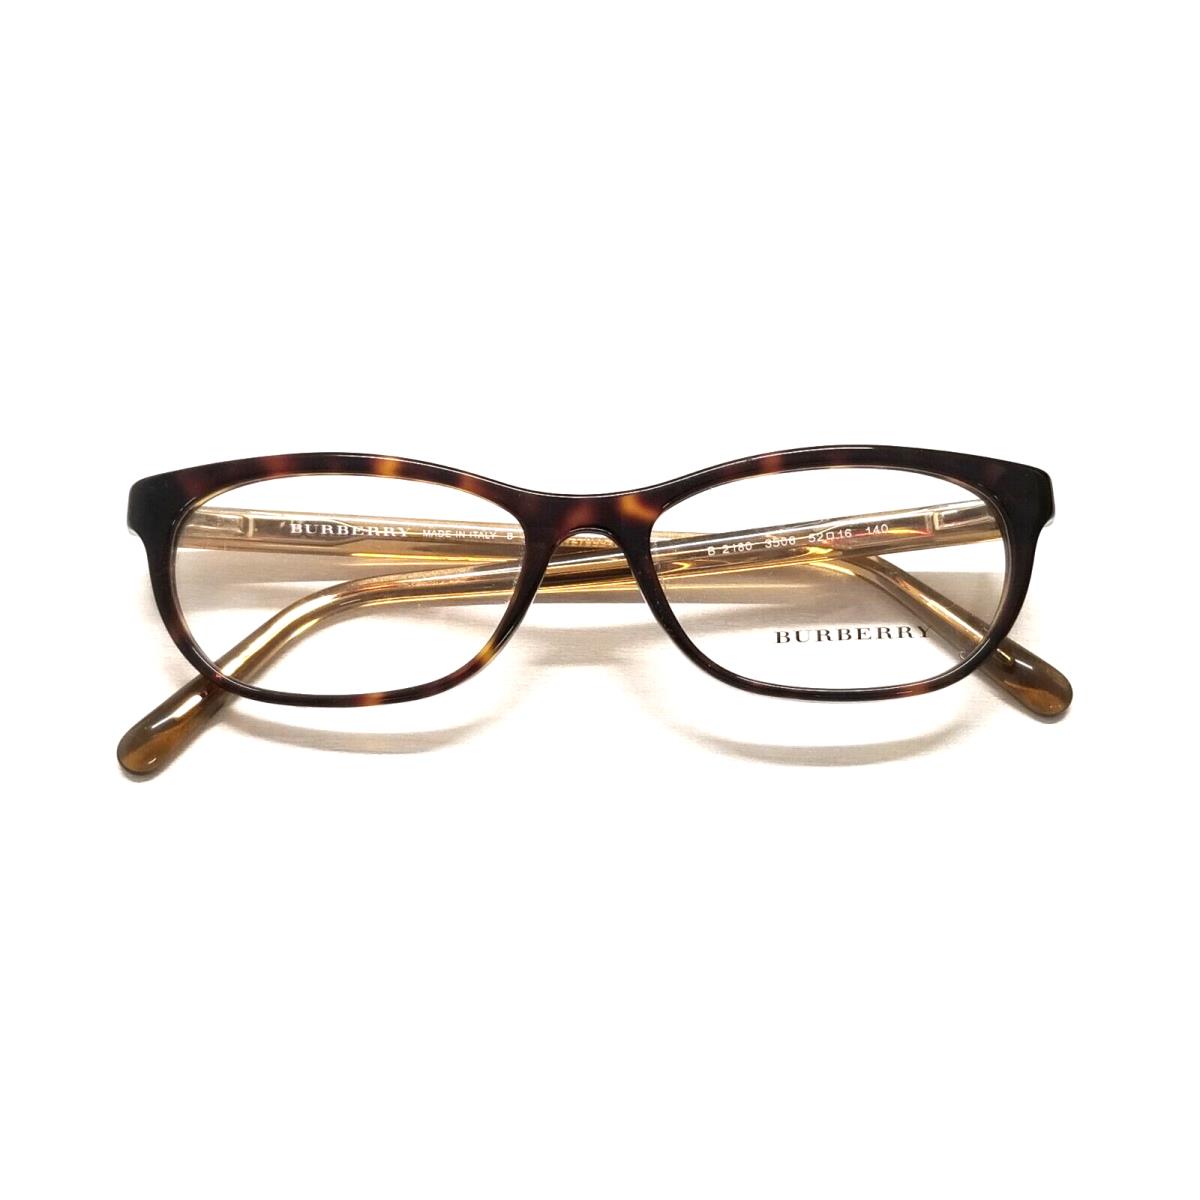 Burberry eyeglasses  - Tortoise, Bronze Frame 1